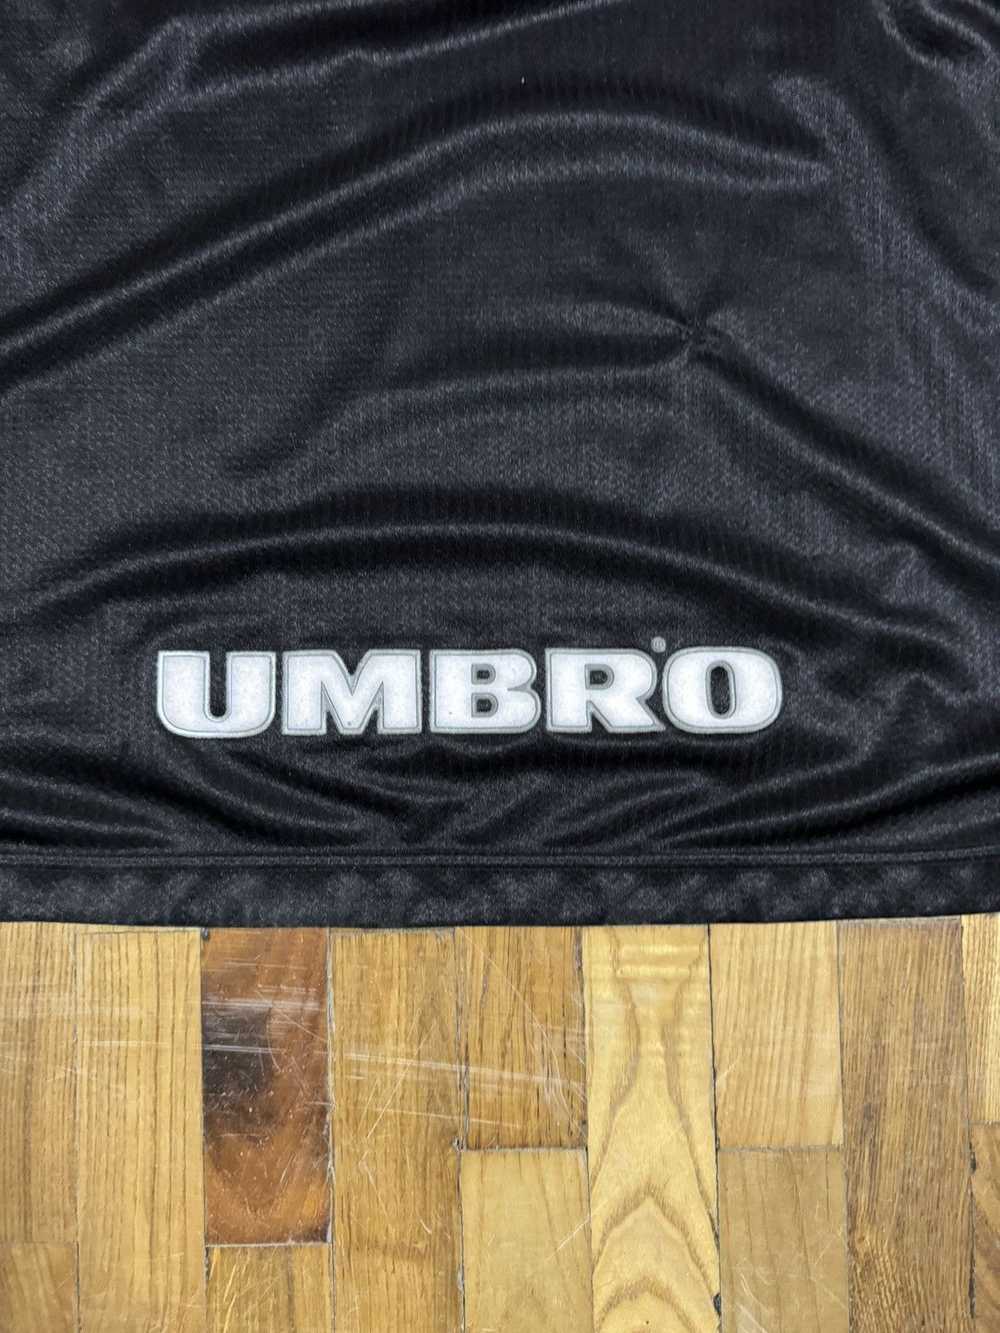 Manchester United × Umbro × Vintage Vintage Umbro… - image 5